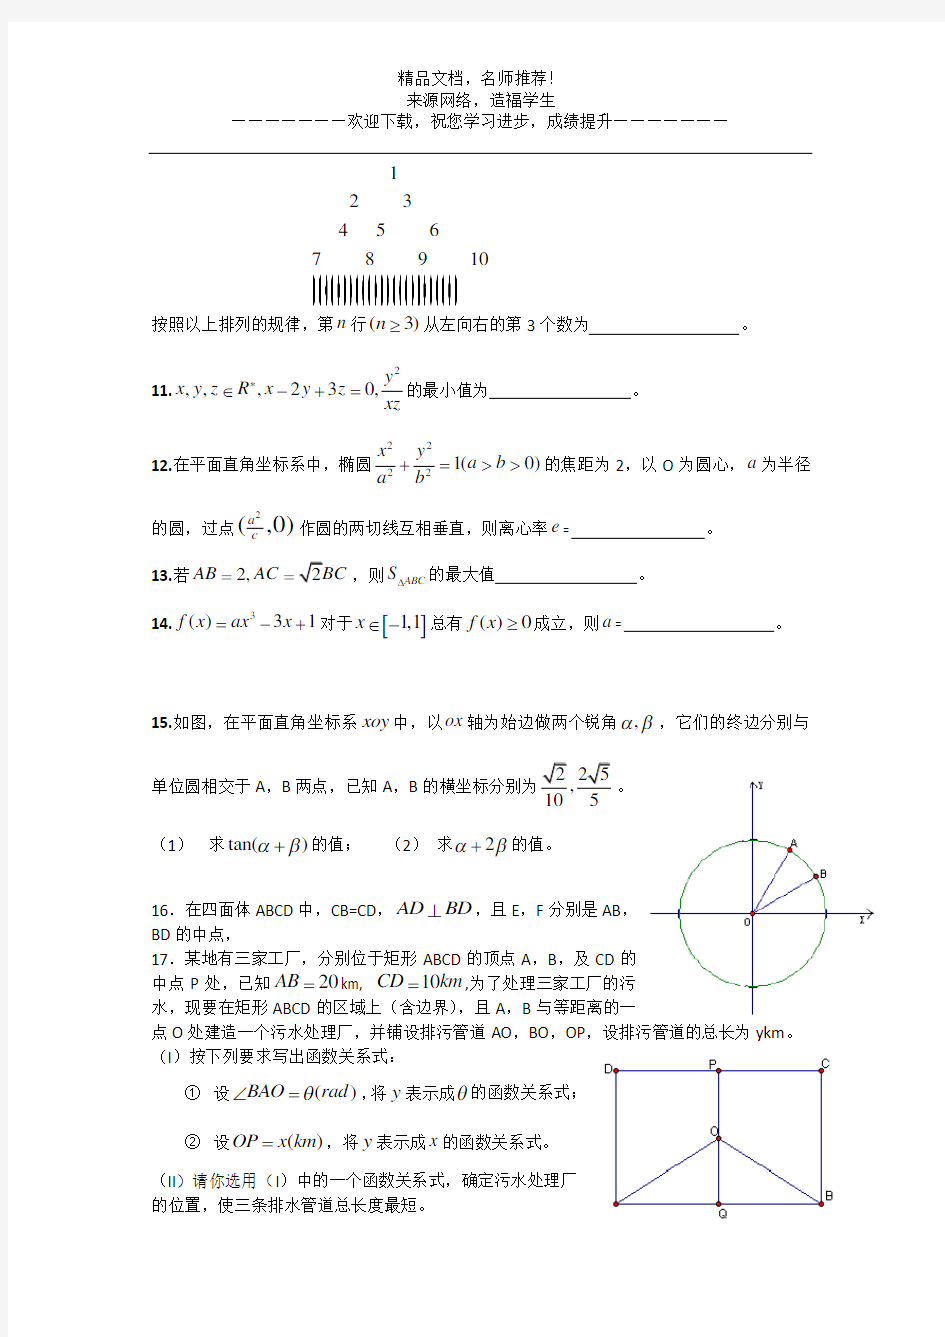 2008年高考真题——数学(江苏卷)